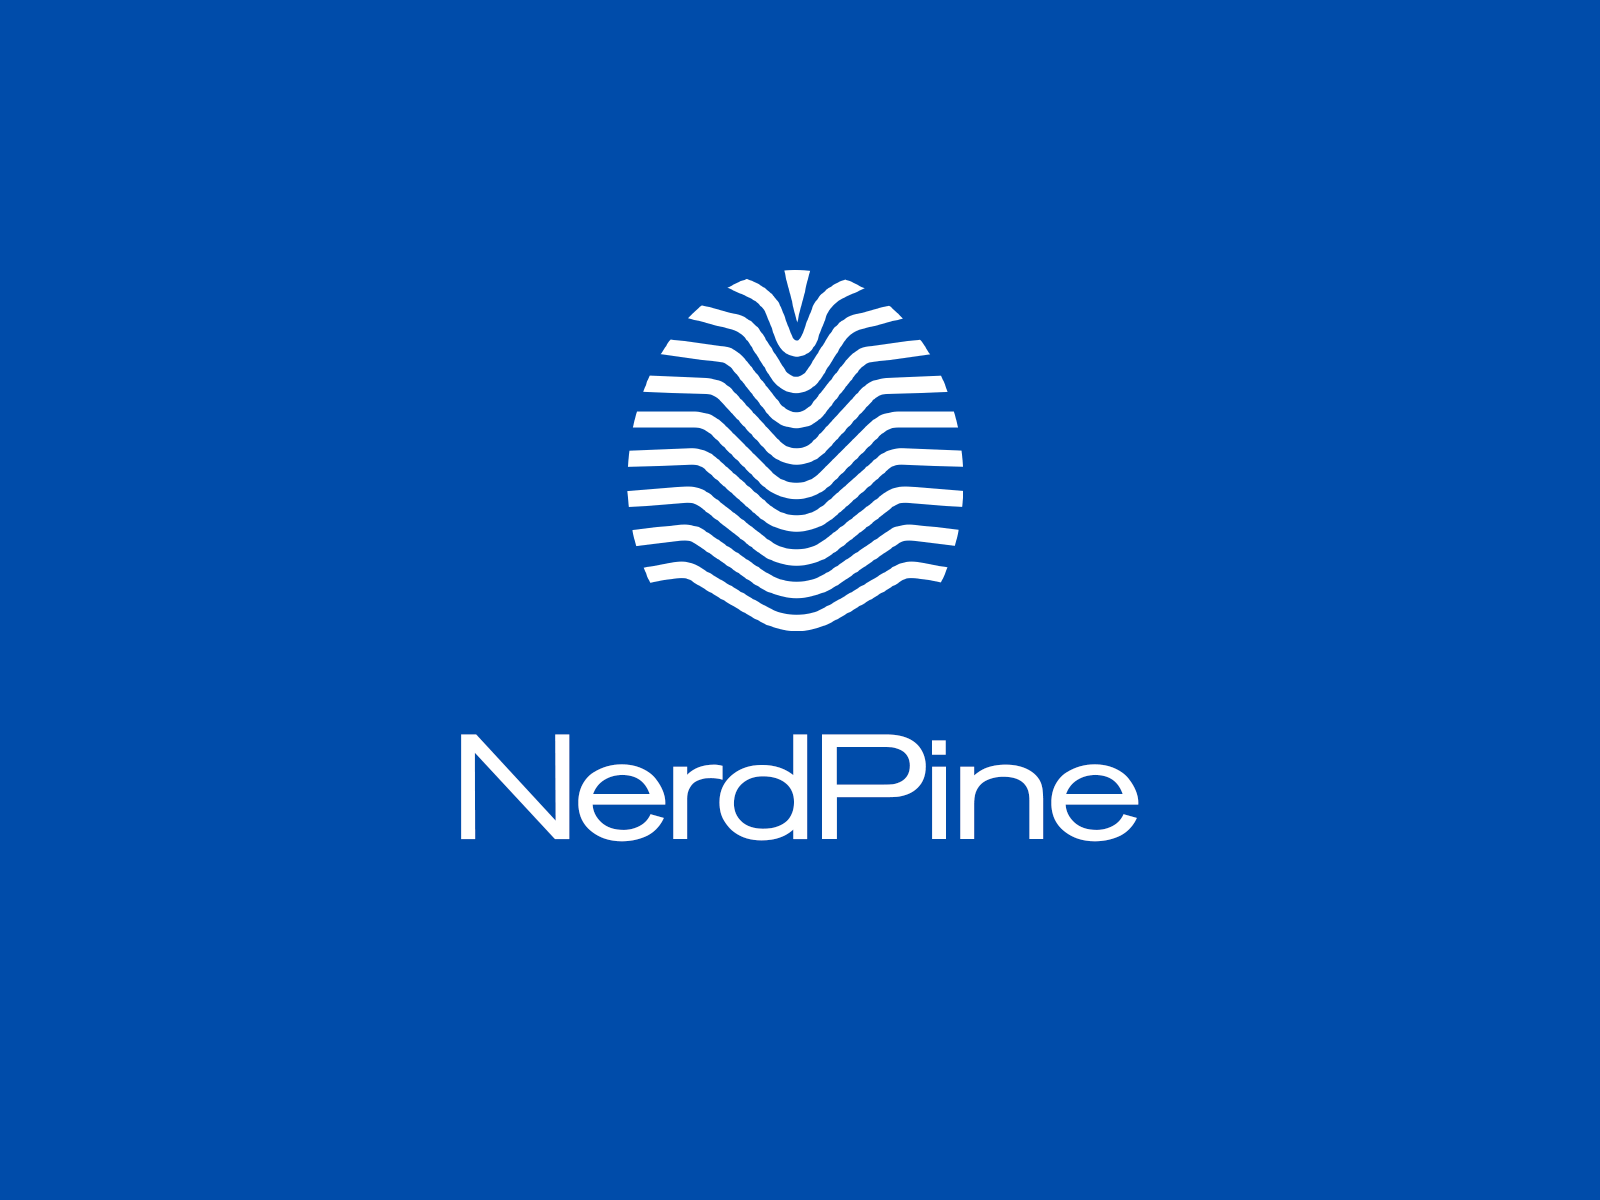 NerdPine logo